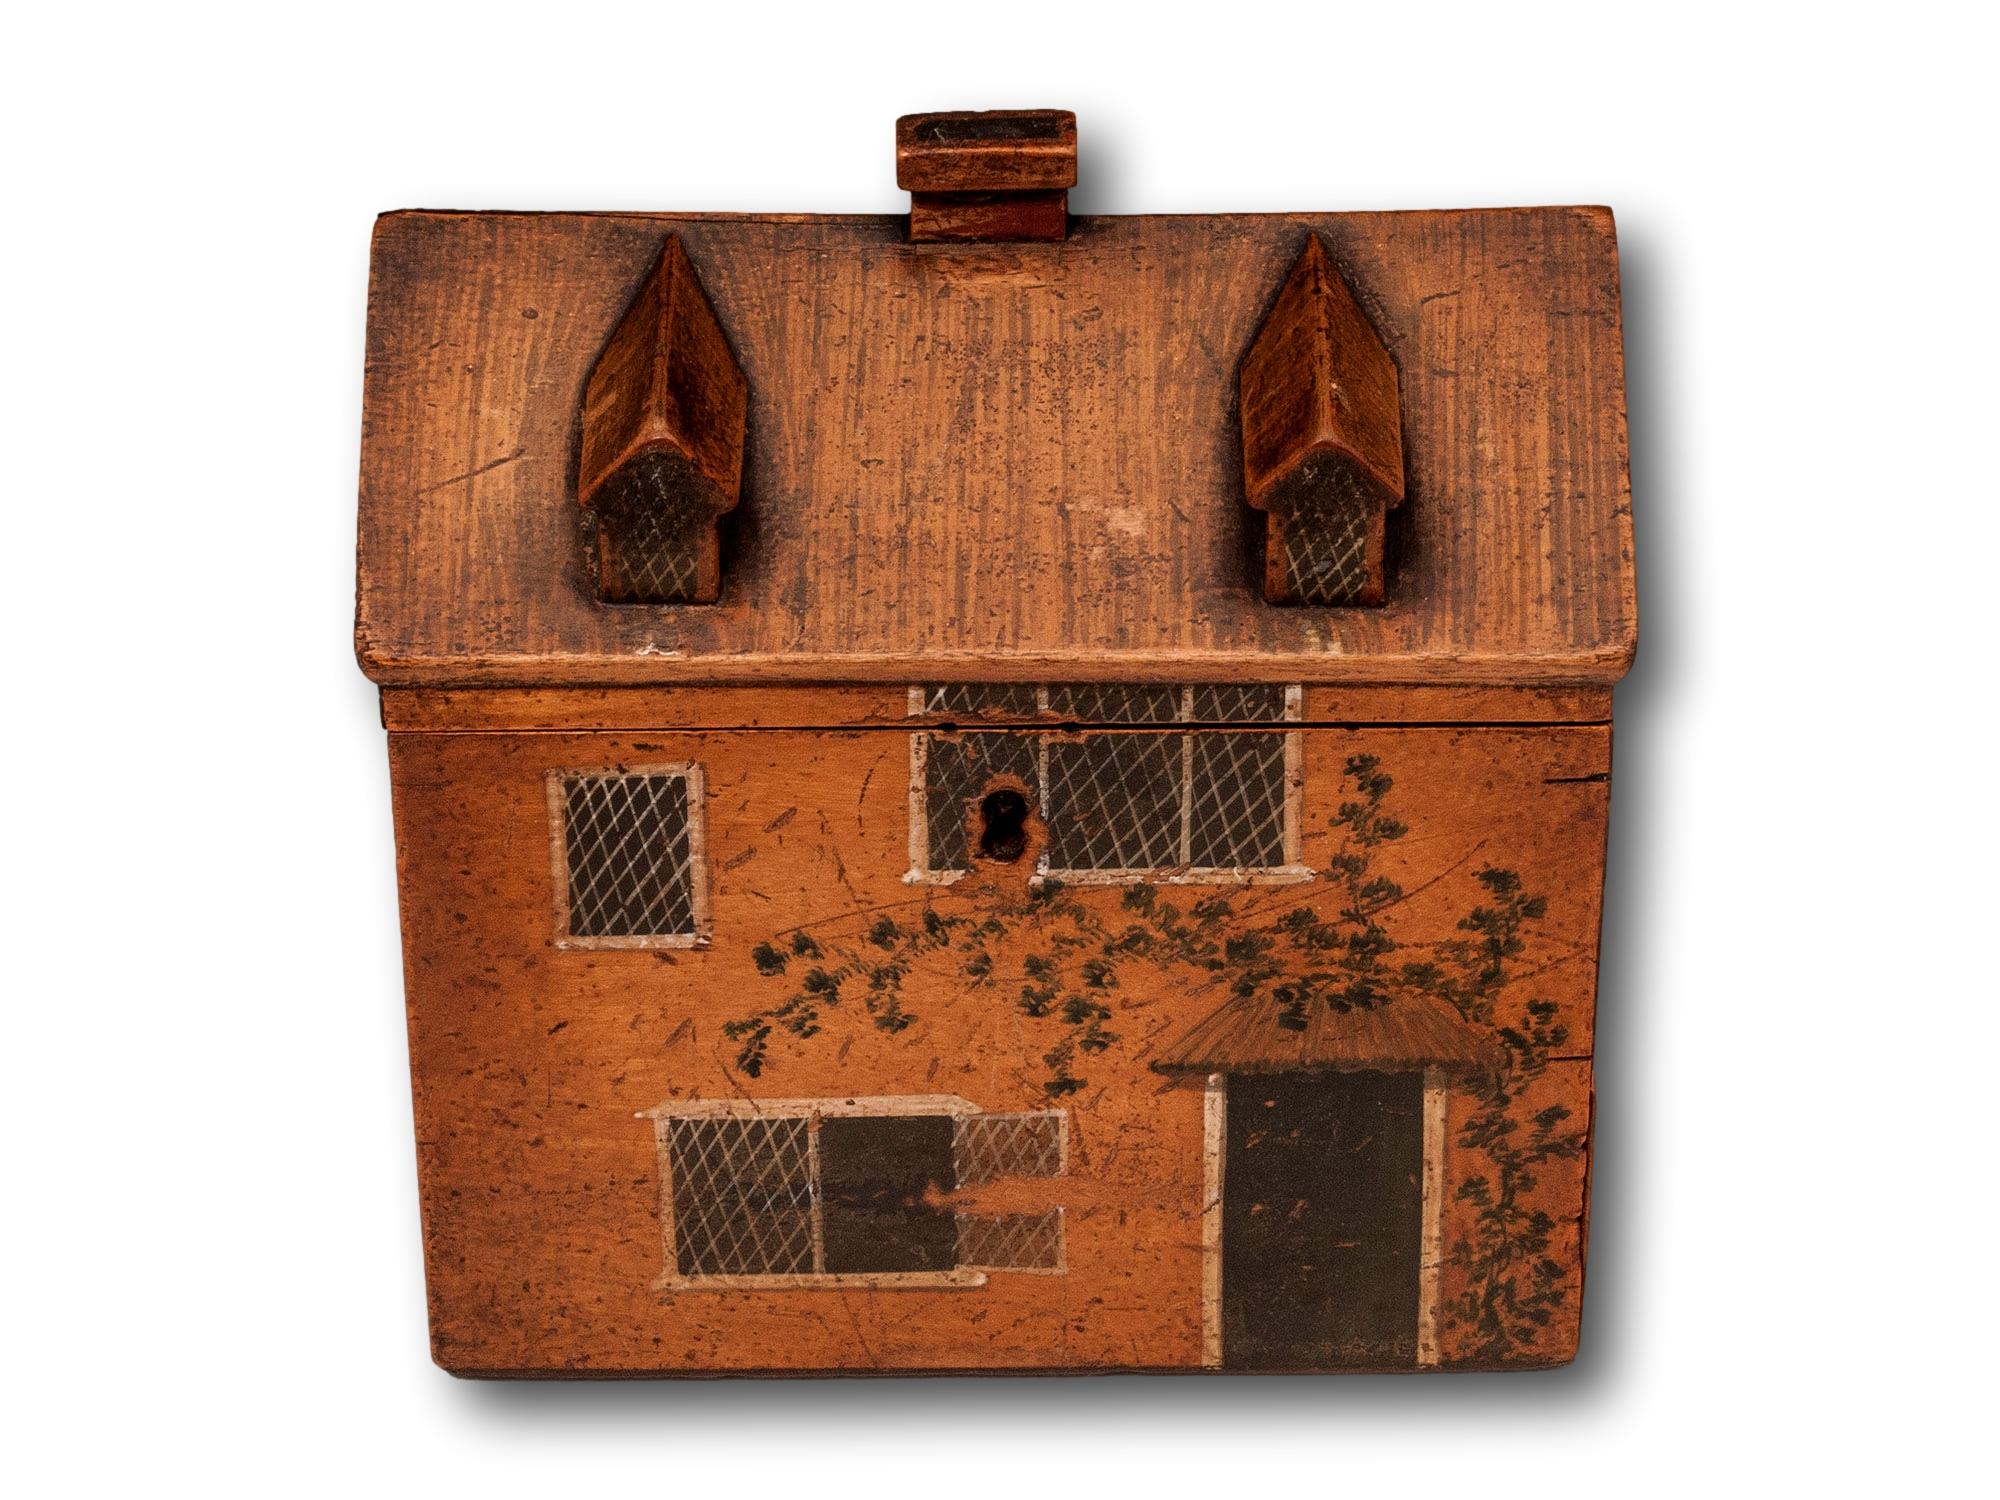 Tunbridge Ware Folk House Nähkästchen

Aus unserer Sewing Box Kollektion, sind wir begeistert, diese Novelty Folk Art Cottage Sewing Box anzubieten. Der Kasten mit rechteckiger Form ist aus Sykomorenholz gefertigt und als Landhaus mit Spitzdach,